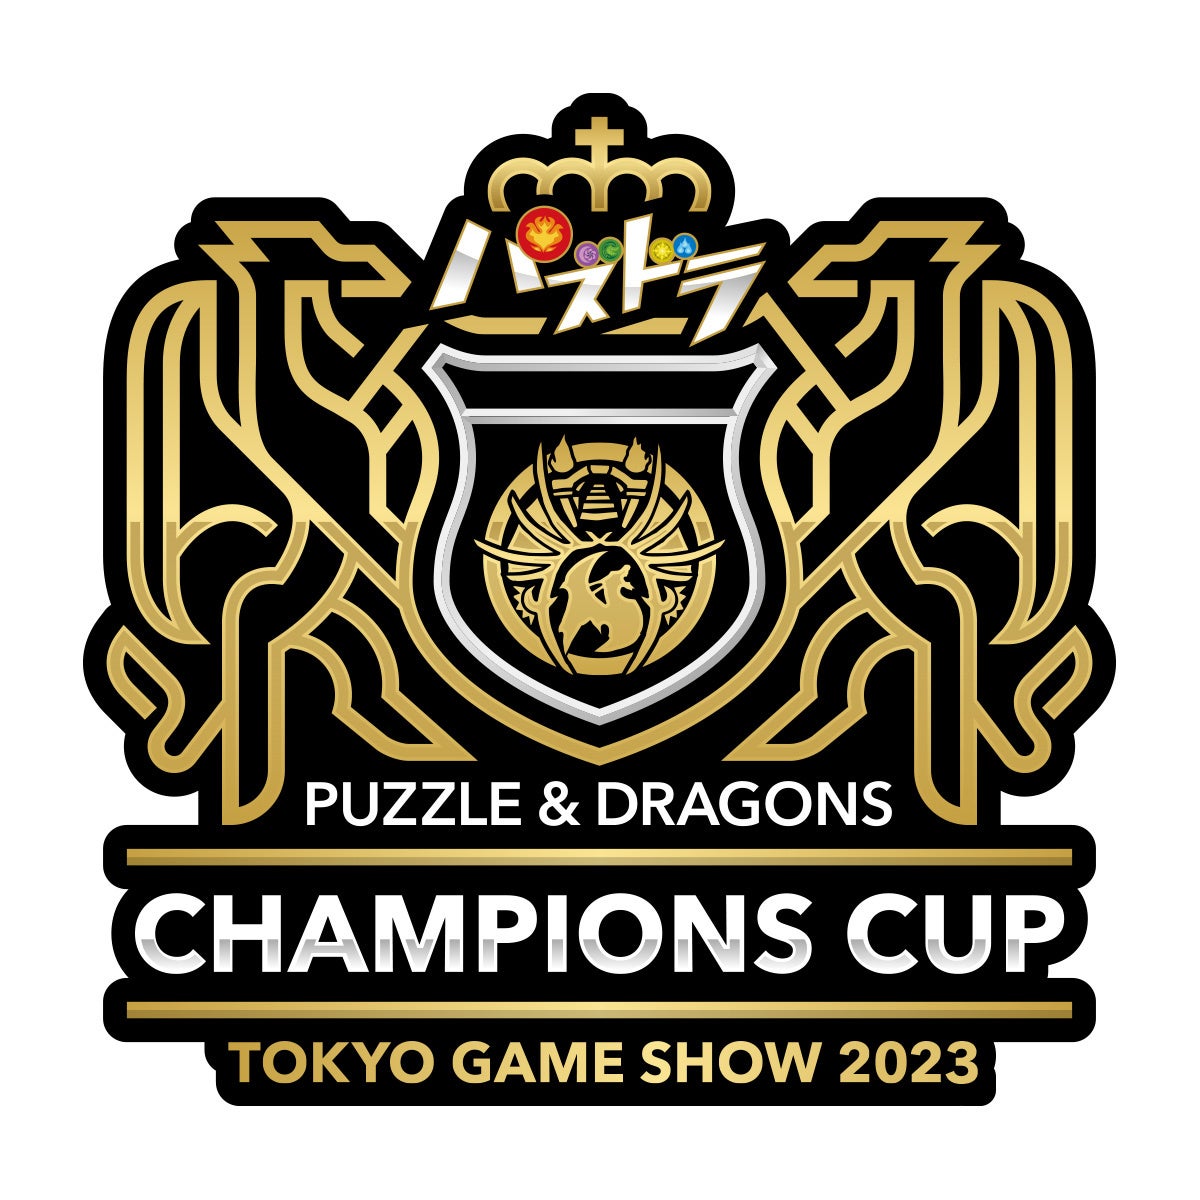 「パズドラチャンピオンズカップ TOKYO GAME SHOW 2023」ロゴ